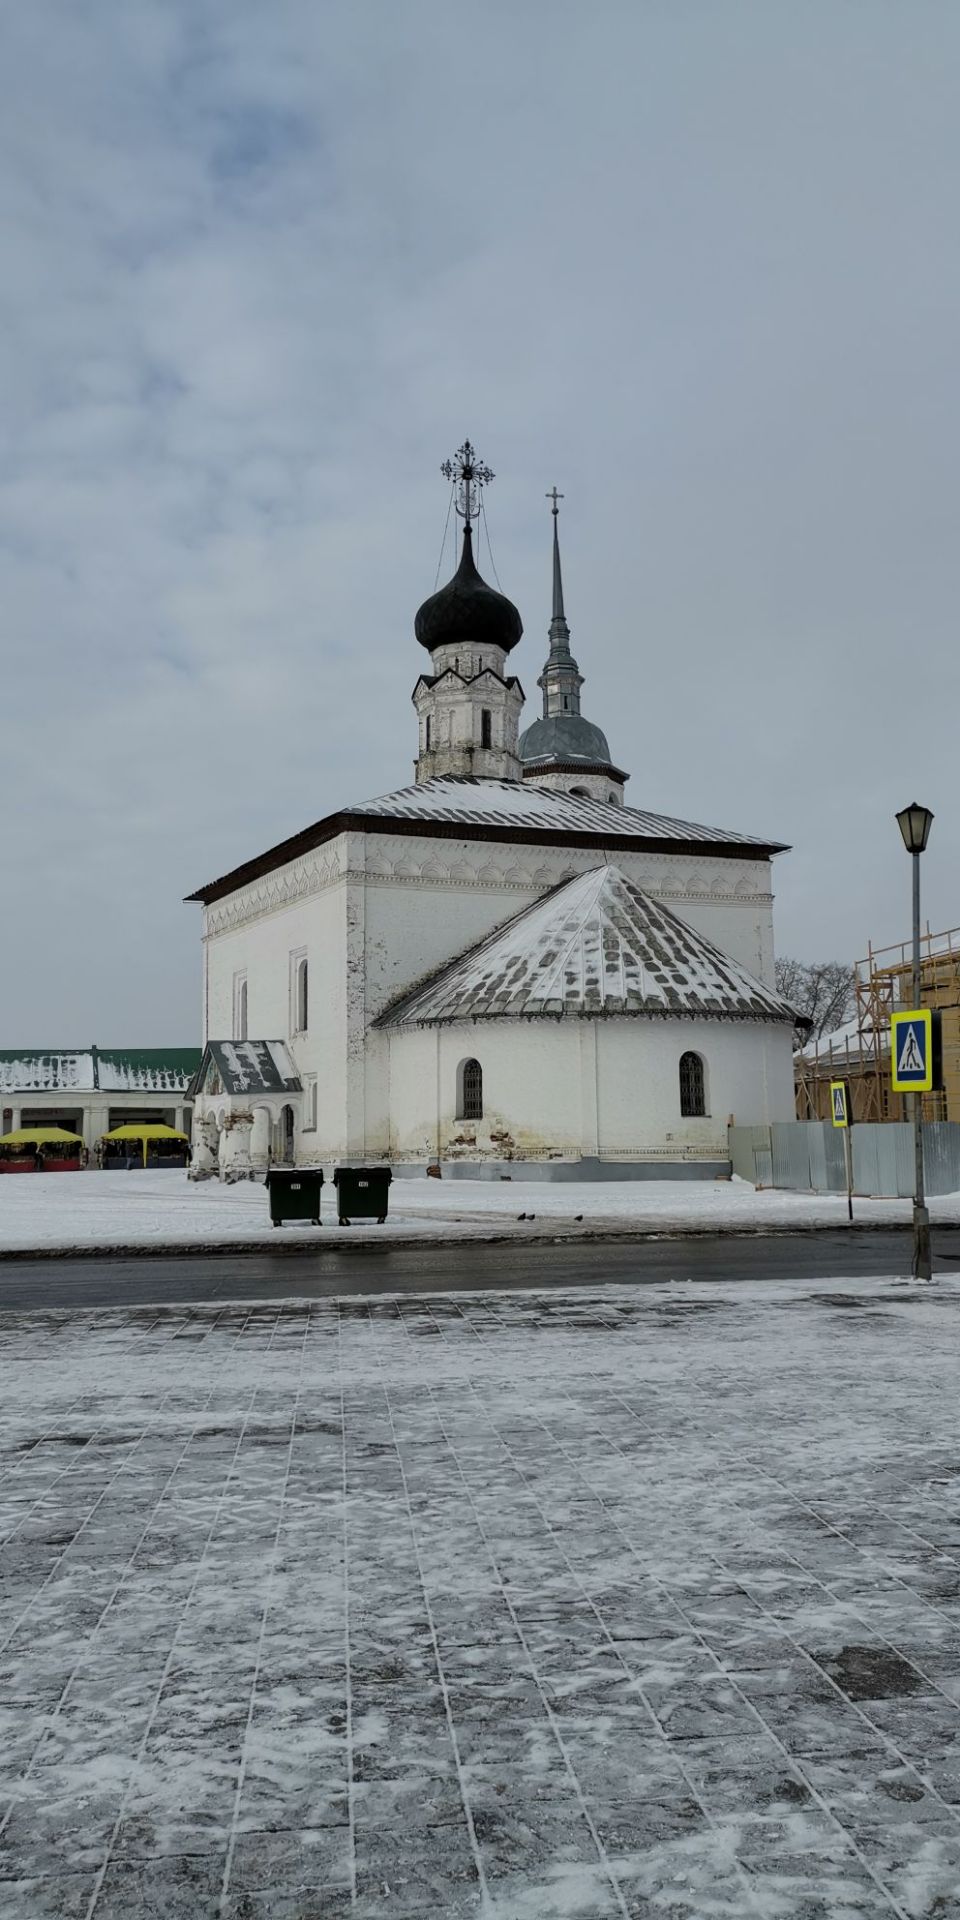 苏玆达尔是俄罗斯最早的聚居地之一，曾经是俄罗斯第二大的政治及宗教中心。苏玆达尔的俄文意思是